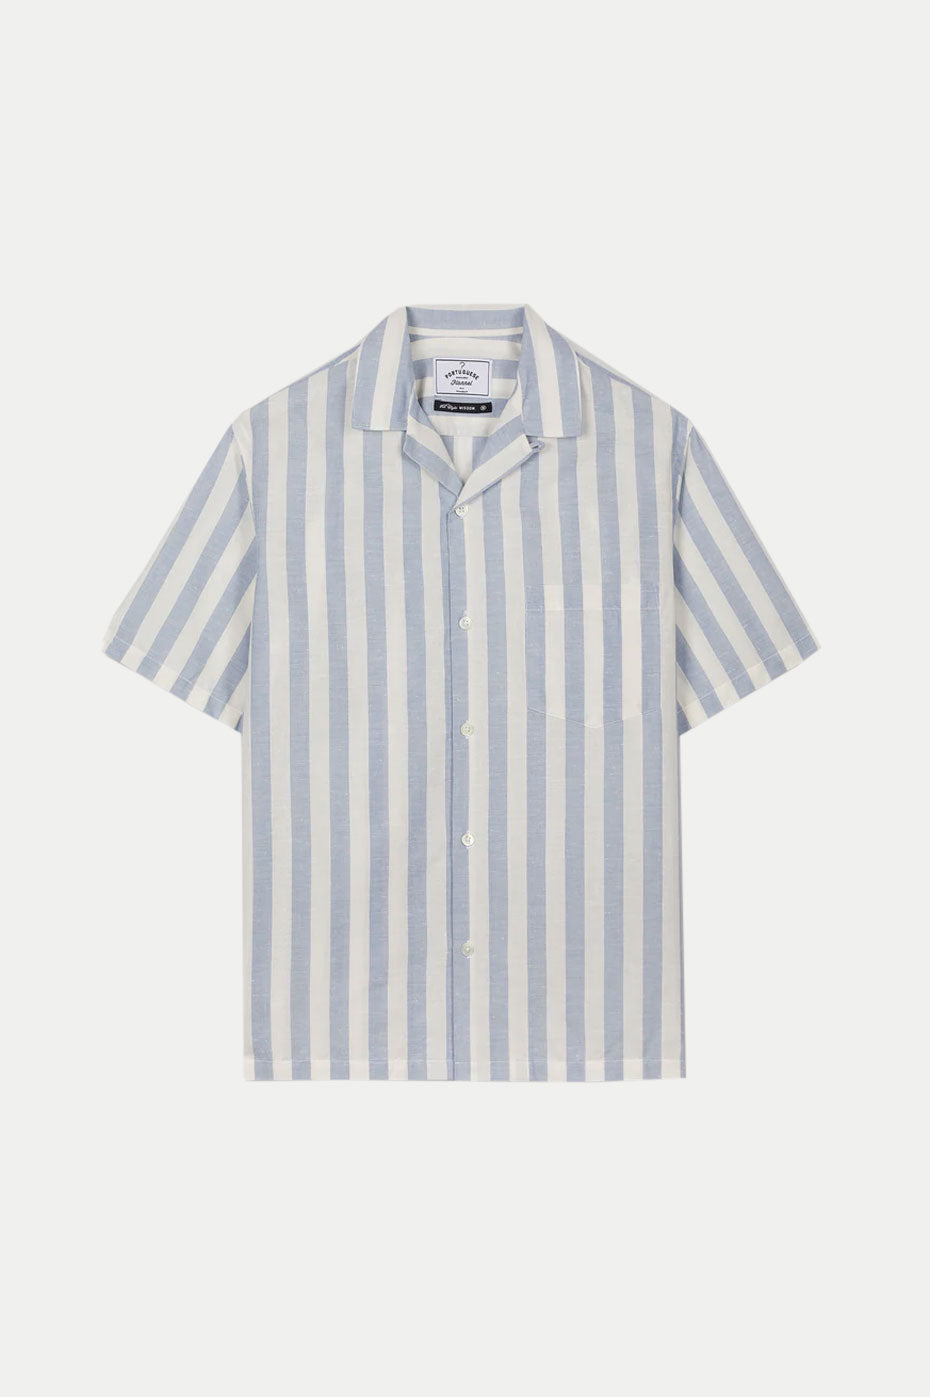  Portuguese Flannel White Blue Stripe Bayon Donegal Shirt